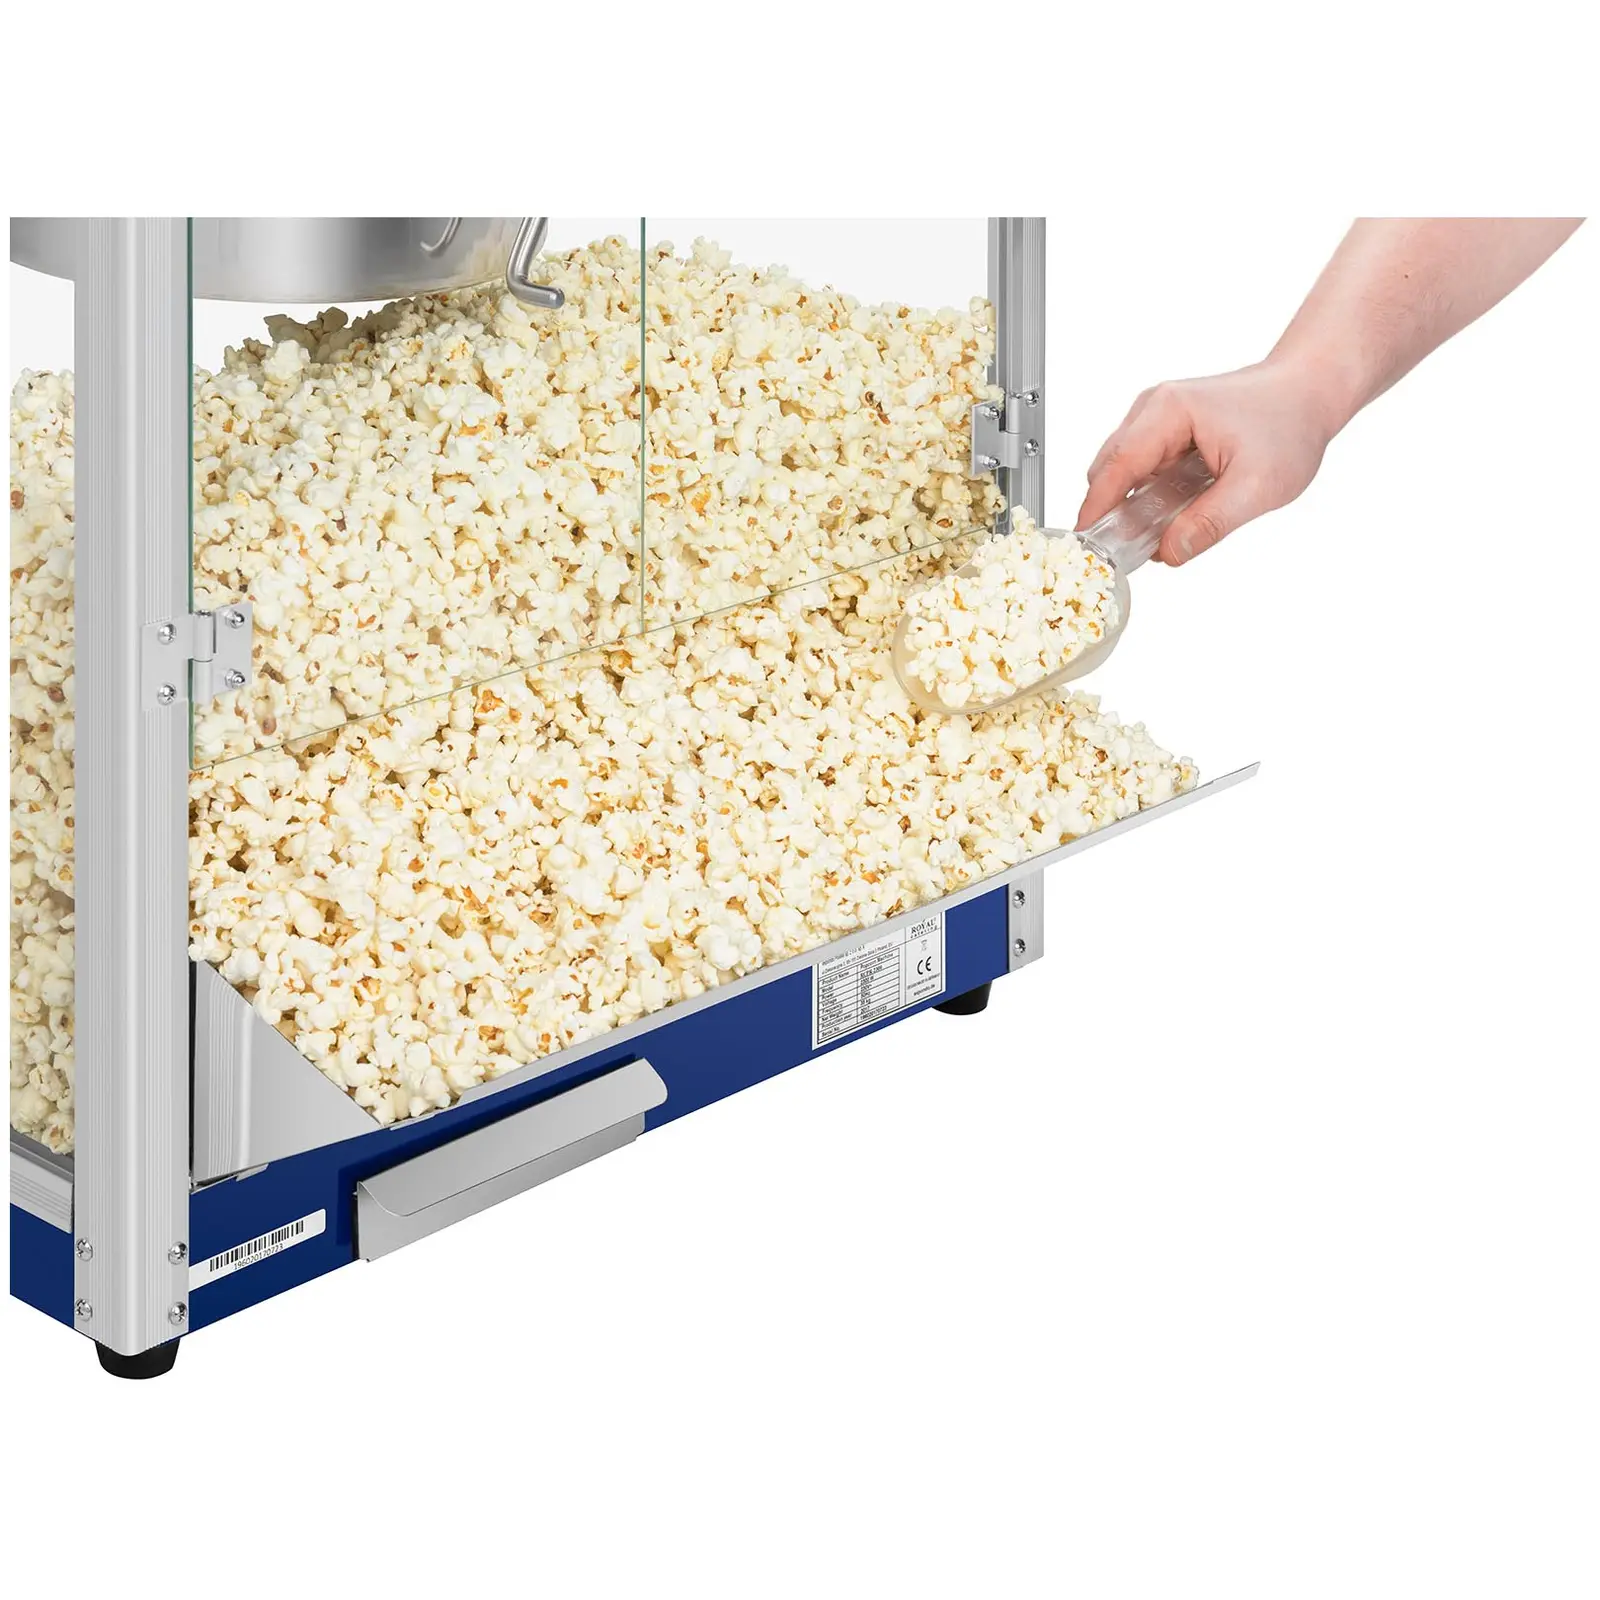 Maszyna do popcornu - 4800 ml - 16 oz - XXL